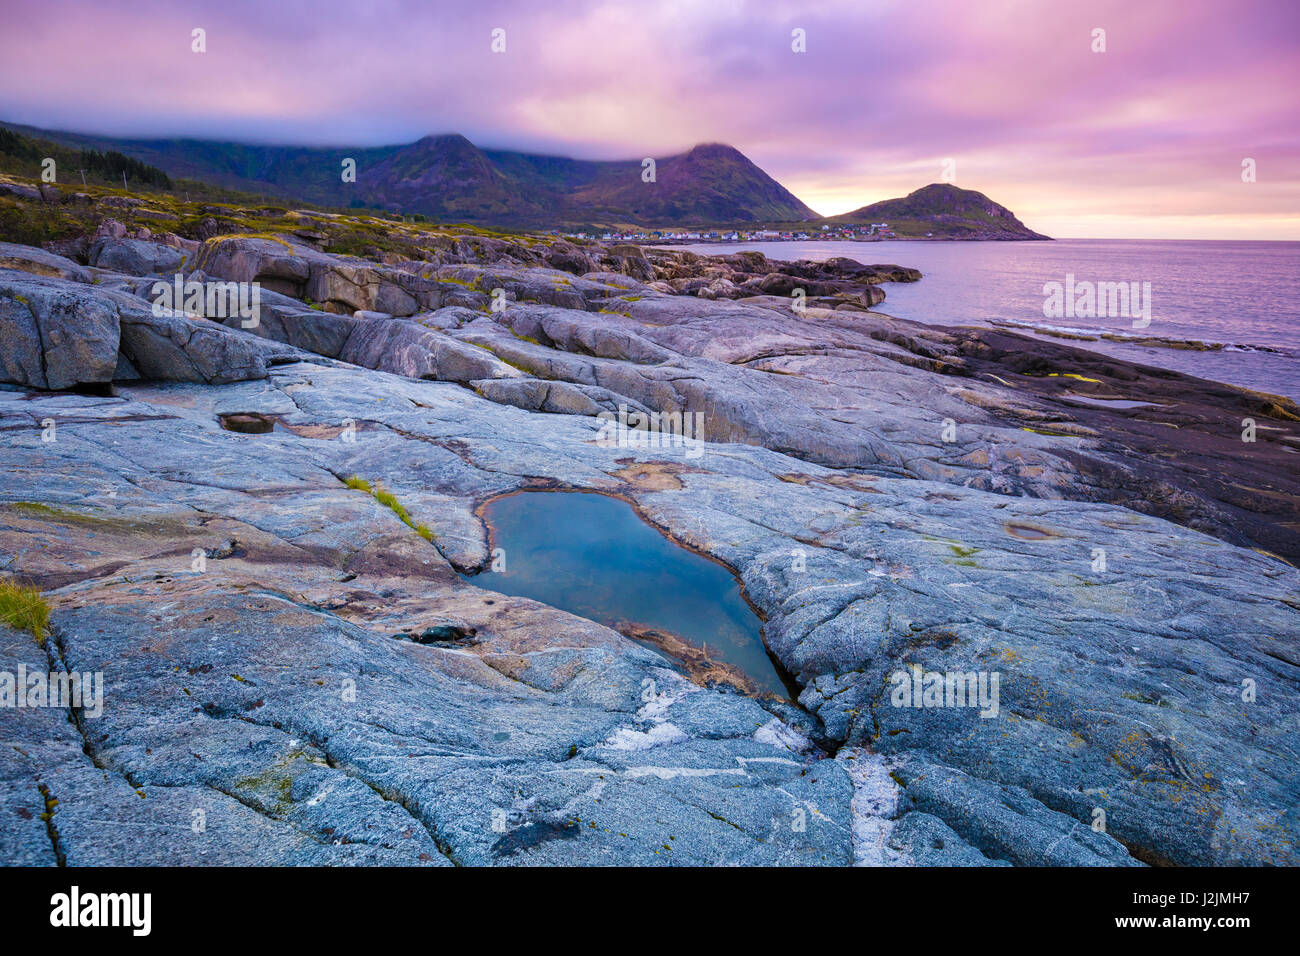 Fjord, Rocky beach at magic rose bleu coucher de soleil, la nature sauvage de la Norvège. L'île de Senja. Magnifique baie. Coucher de soleil pittoresque Banque D'Images